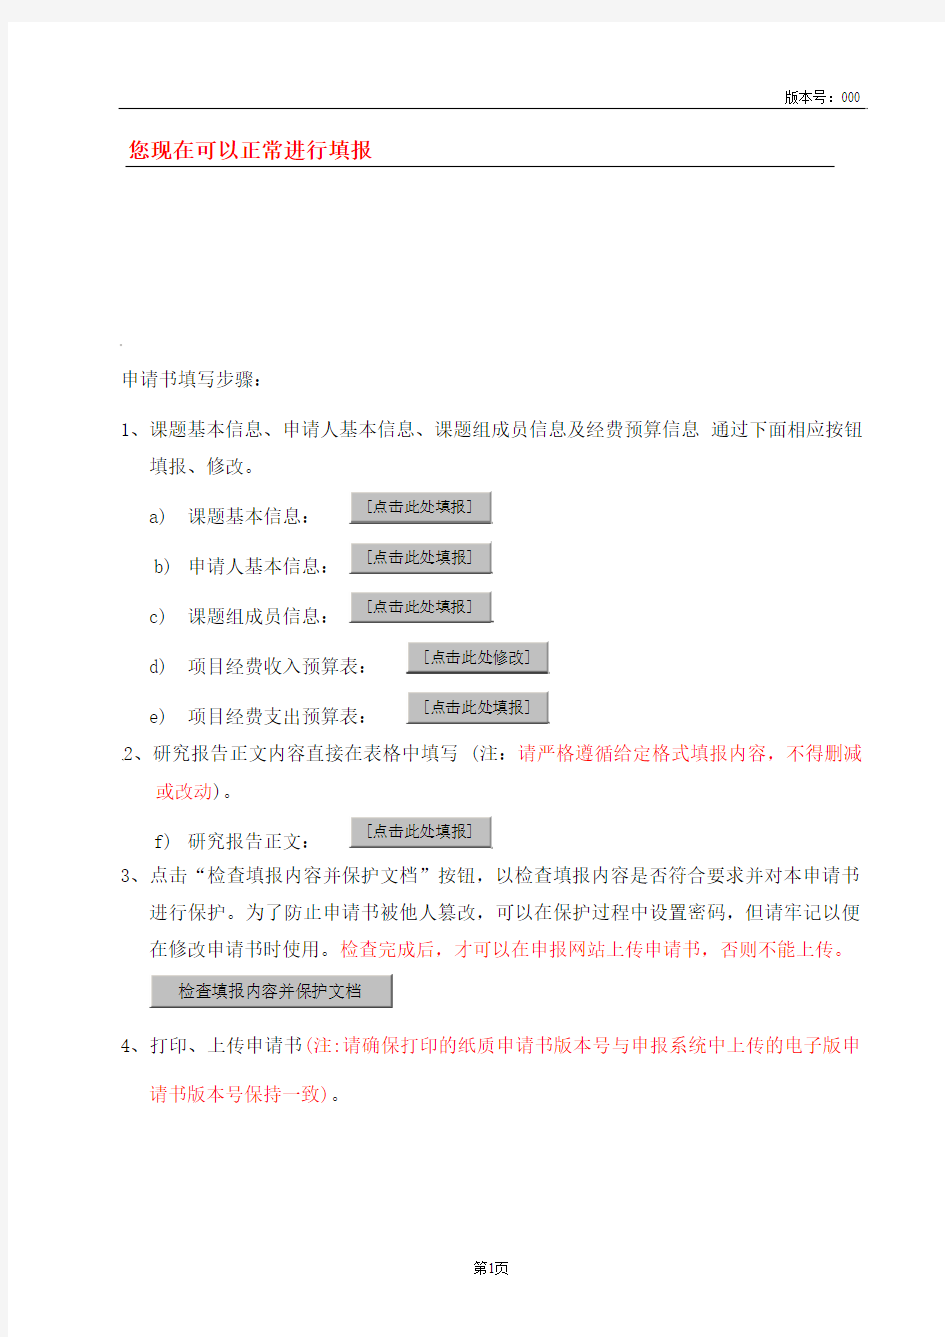 河南省高等学校重点科研项目基础研究计划申请书(2015版)